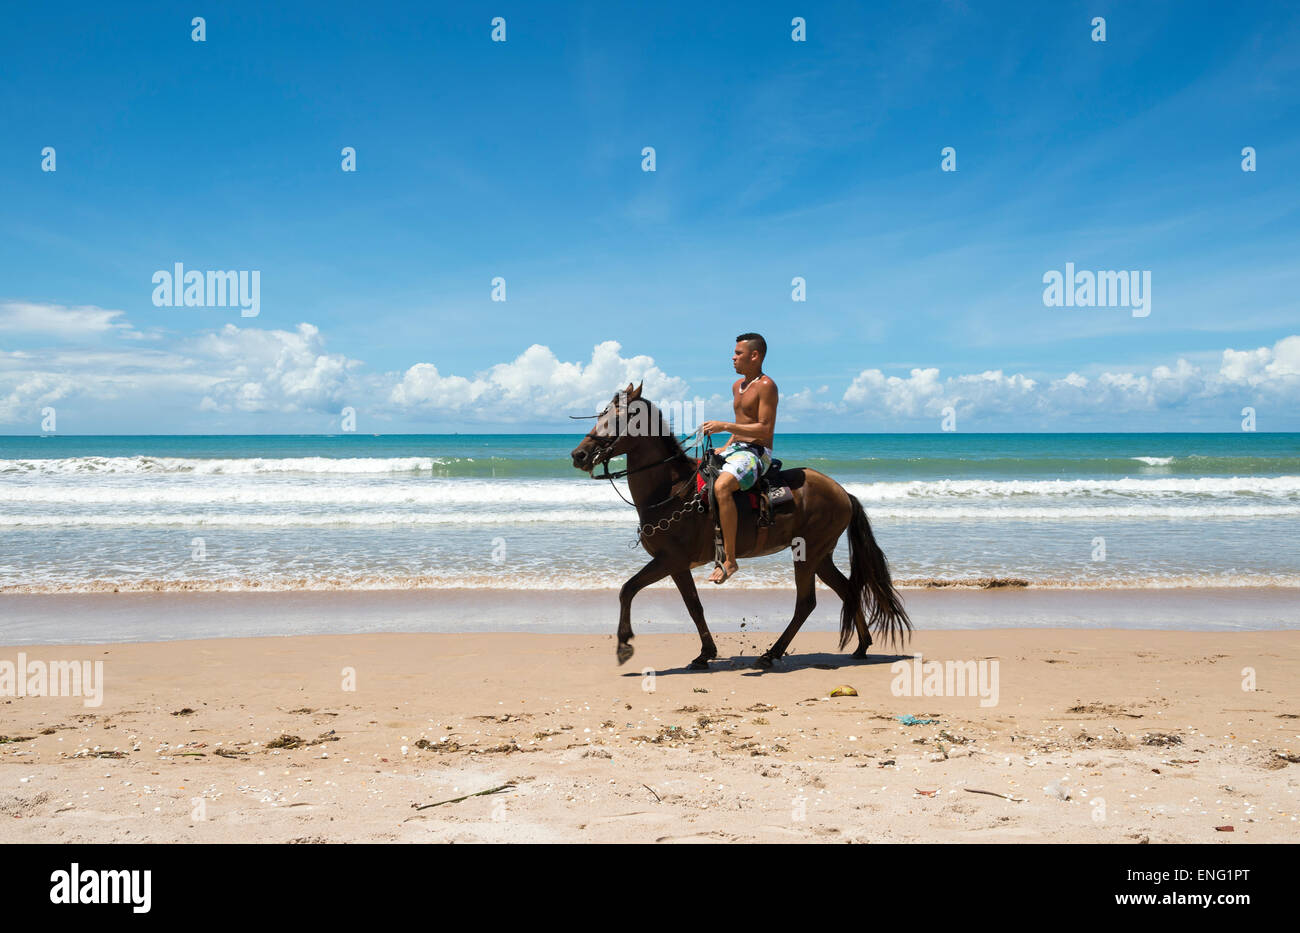 BAHIA, Brasilien - 15. März 2015: Brasilianische Mann reitet sein Pferd an einem breiten Strand entlang. Stockfoto